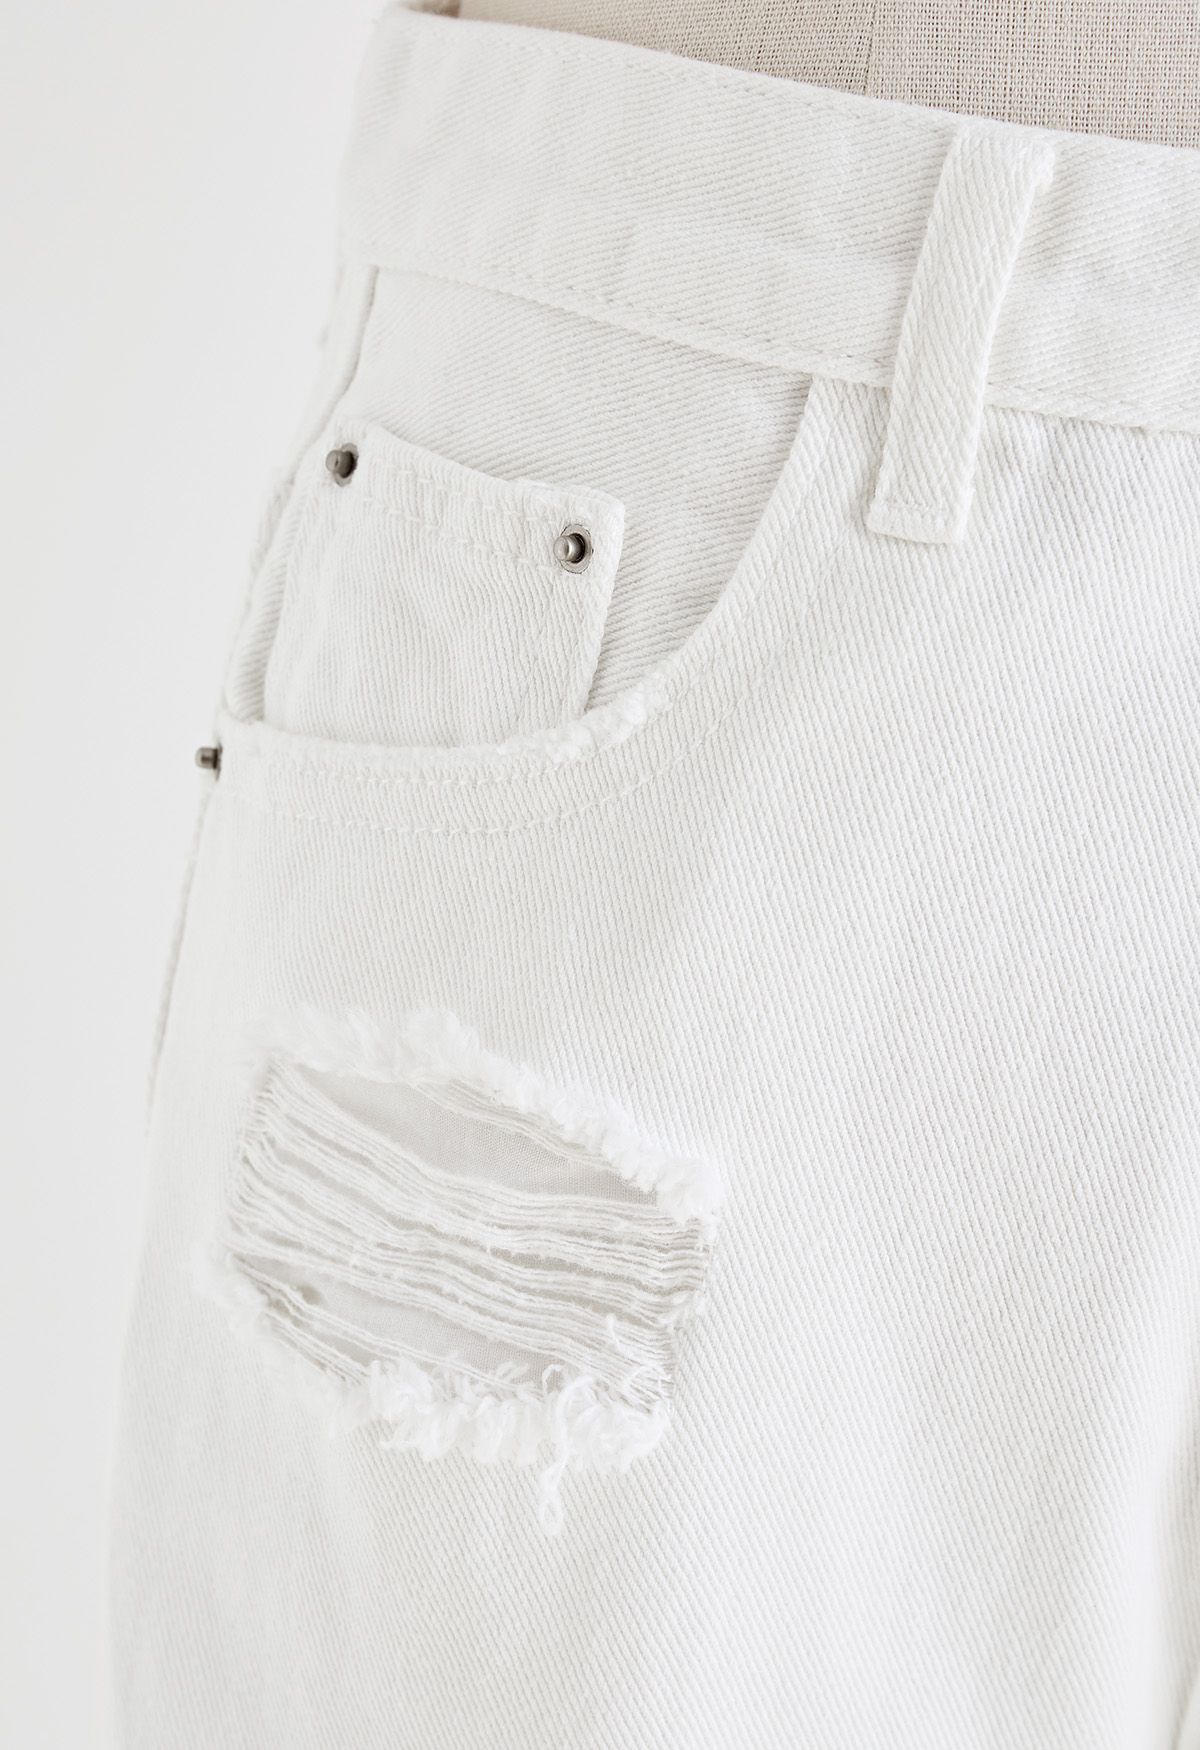 Jeans Flare com detalhe rasgado e bainha